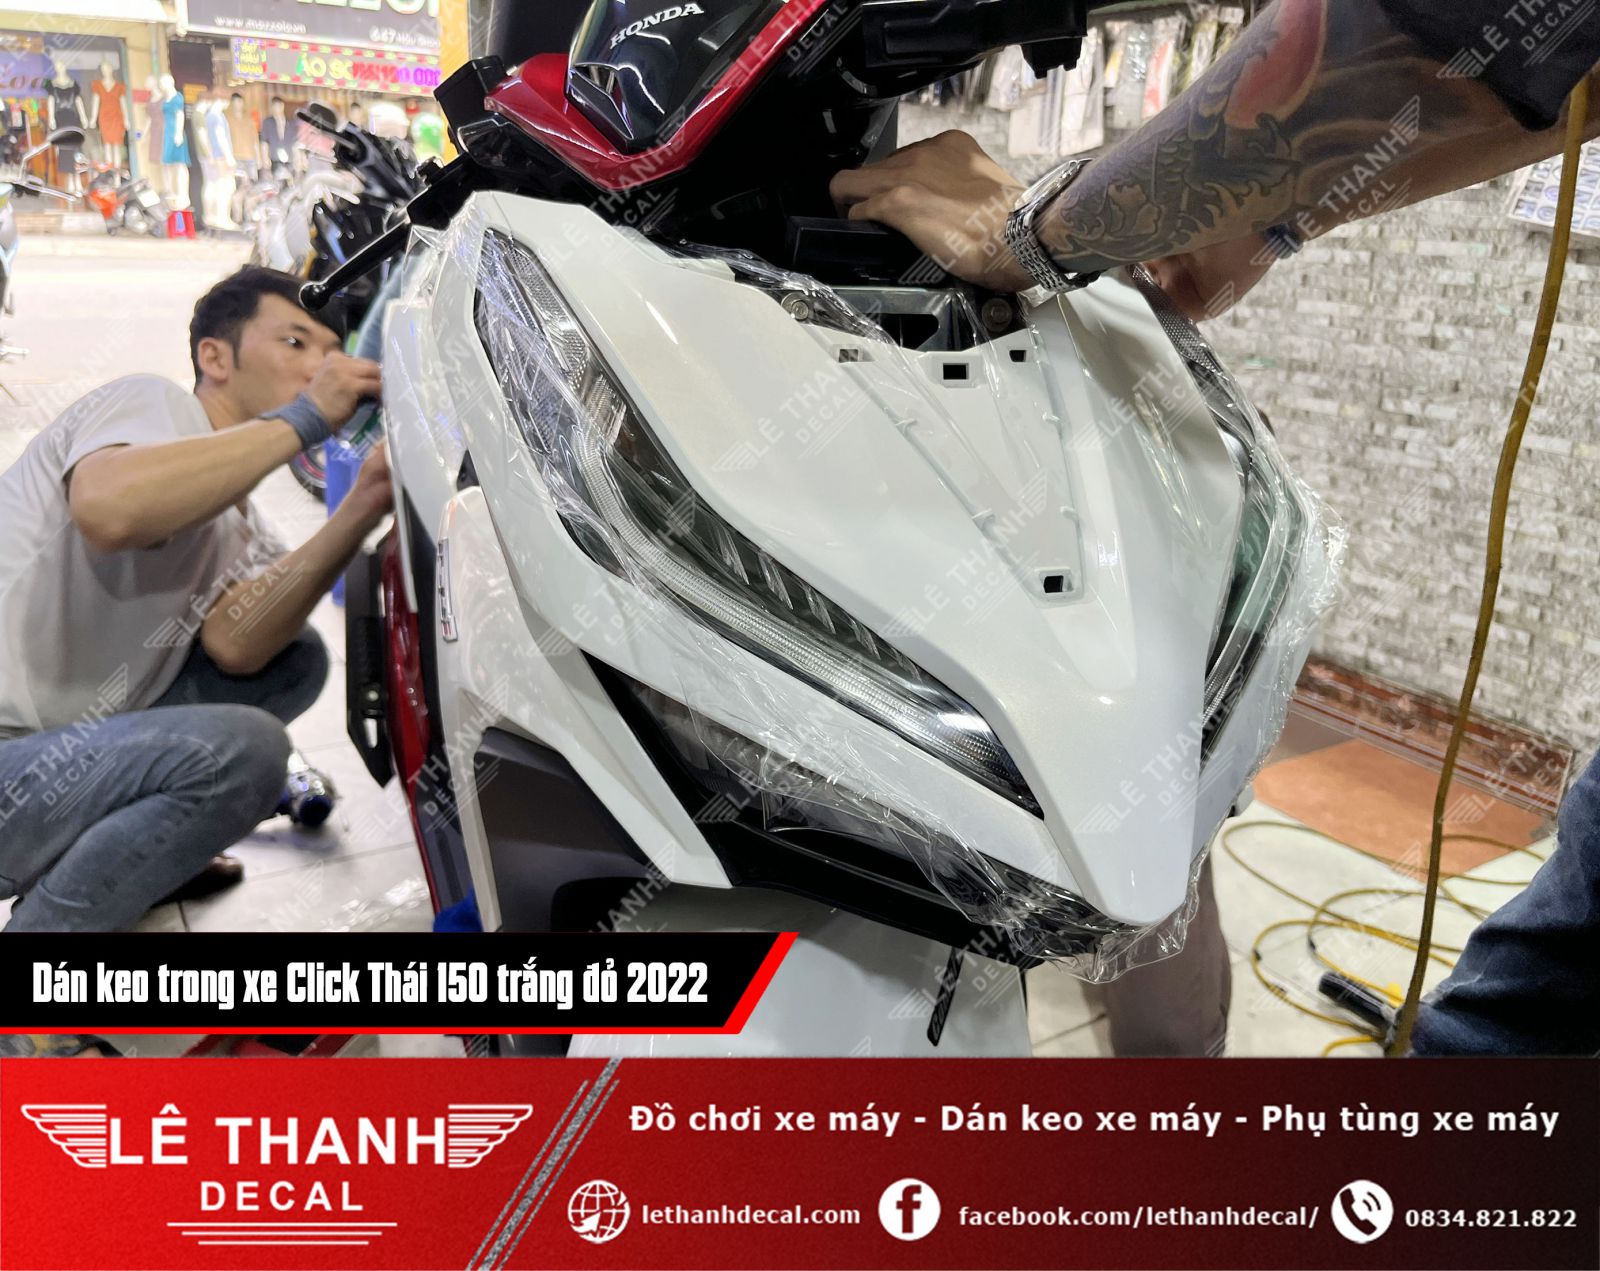 Dán keo trong xe máy Click Thái 150 trắng đỏ 2022